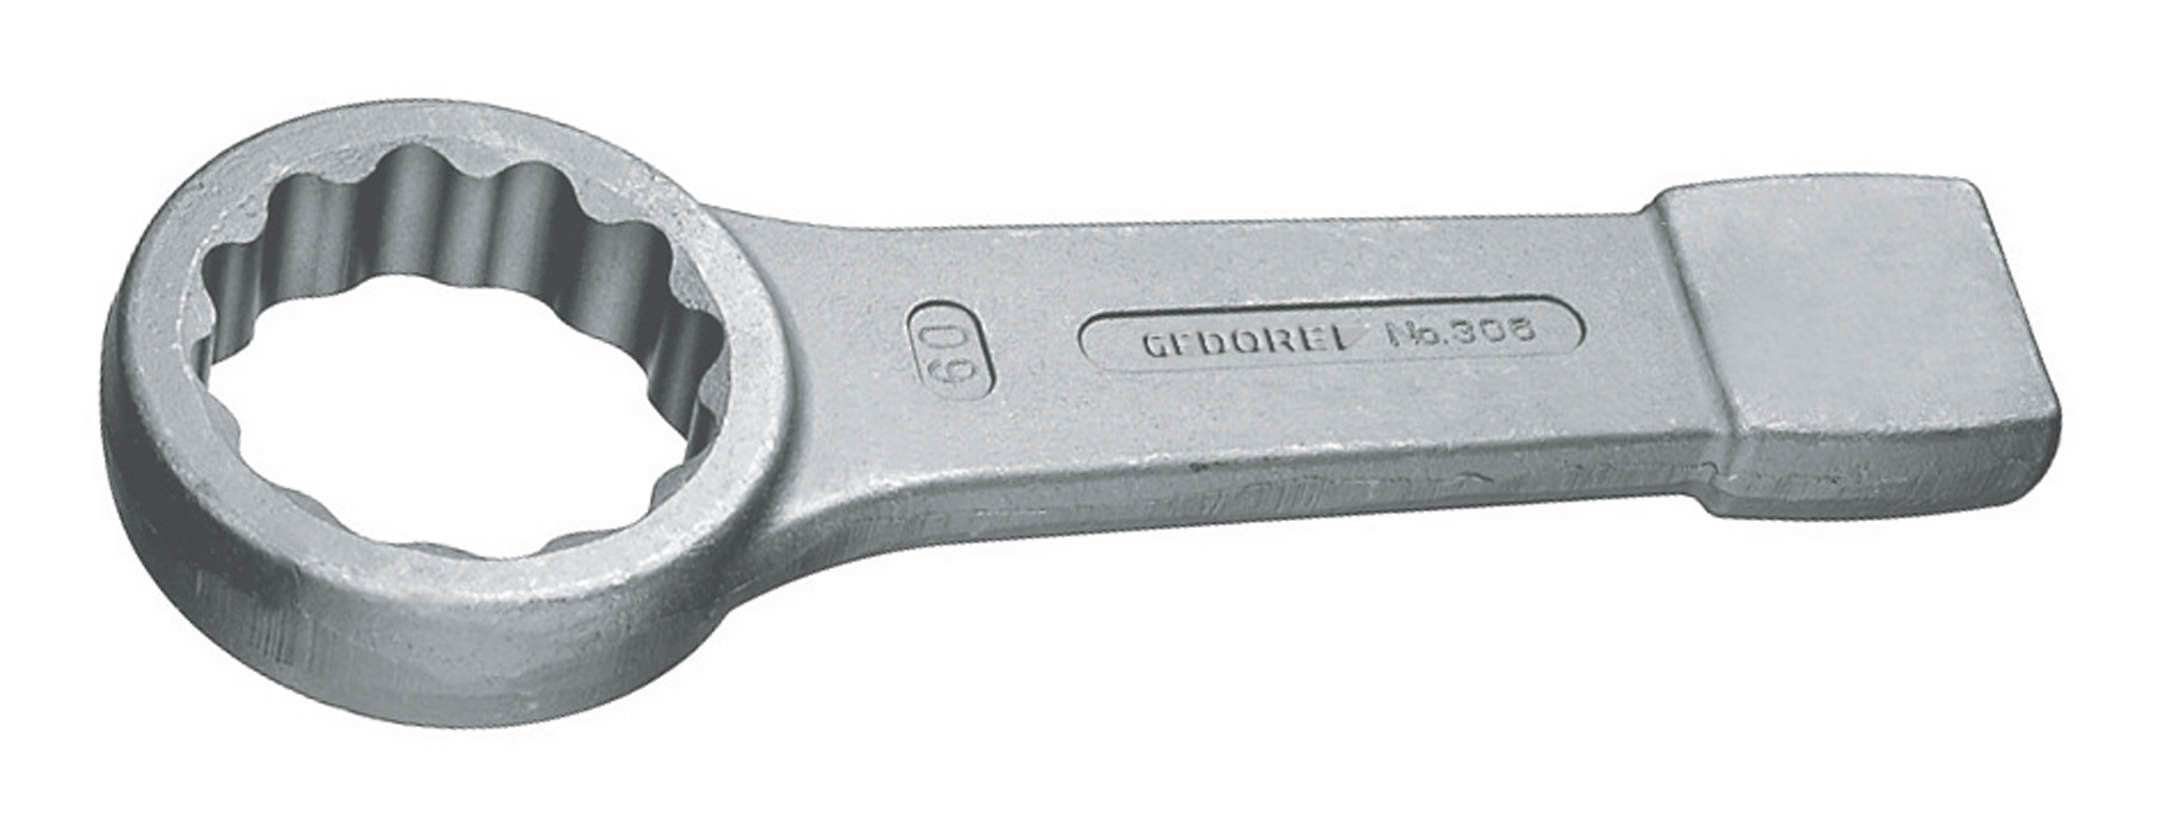 Gedore Ringschlüssel, Schlag DIN7444 85 mm